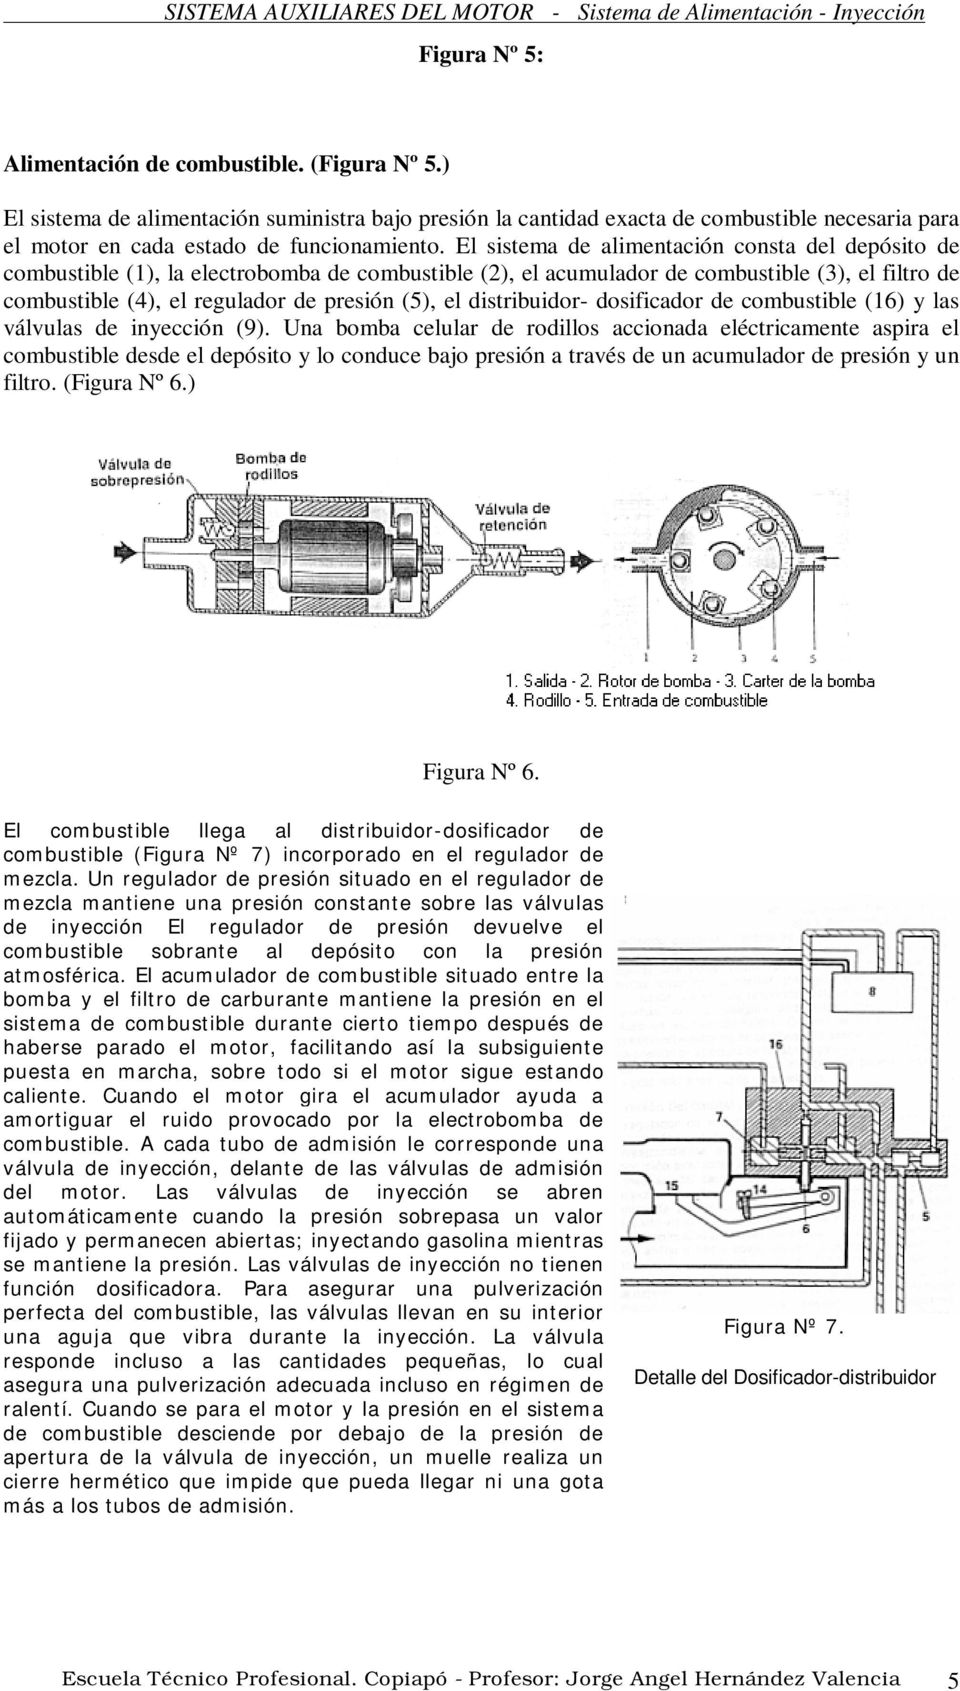 distribuidor- dosificador de combustible (16) y las válvulas de inyección (9).